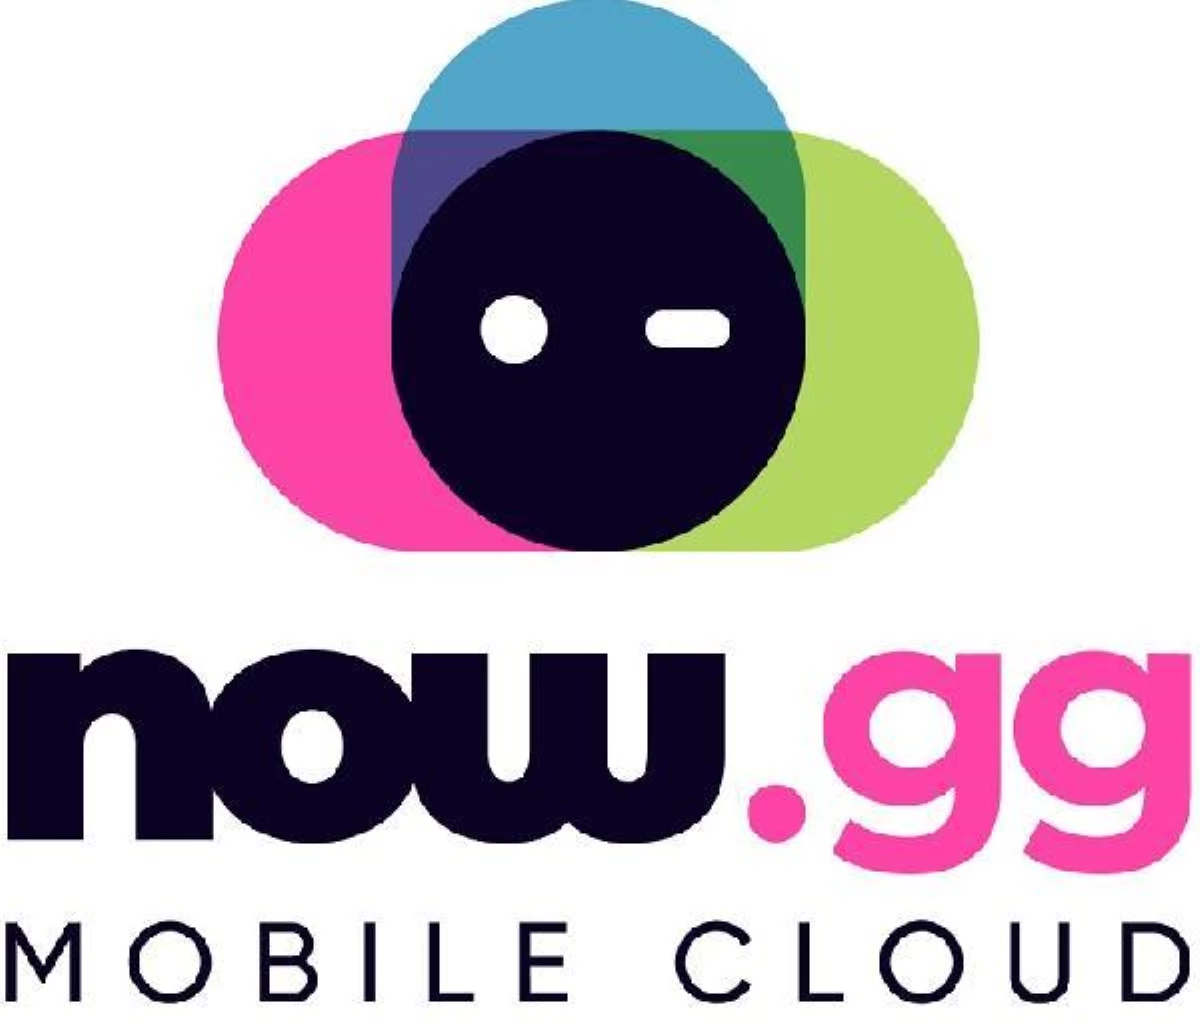 Mobil oyunlarda bulut dönemi: Artık her cihazdan oynanabilecek